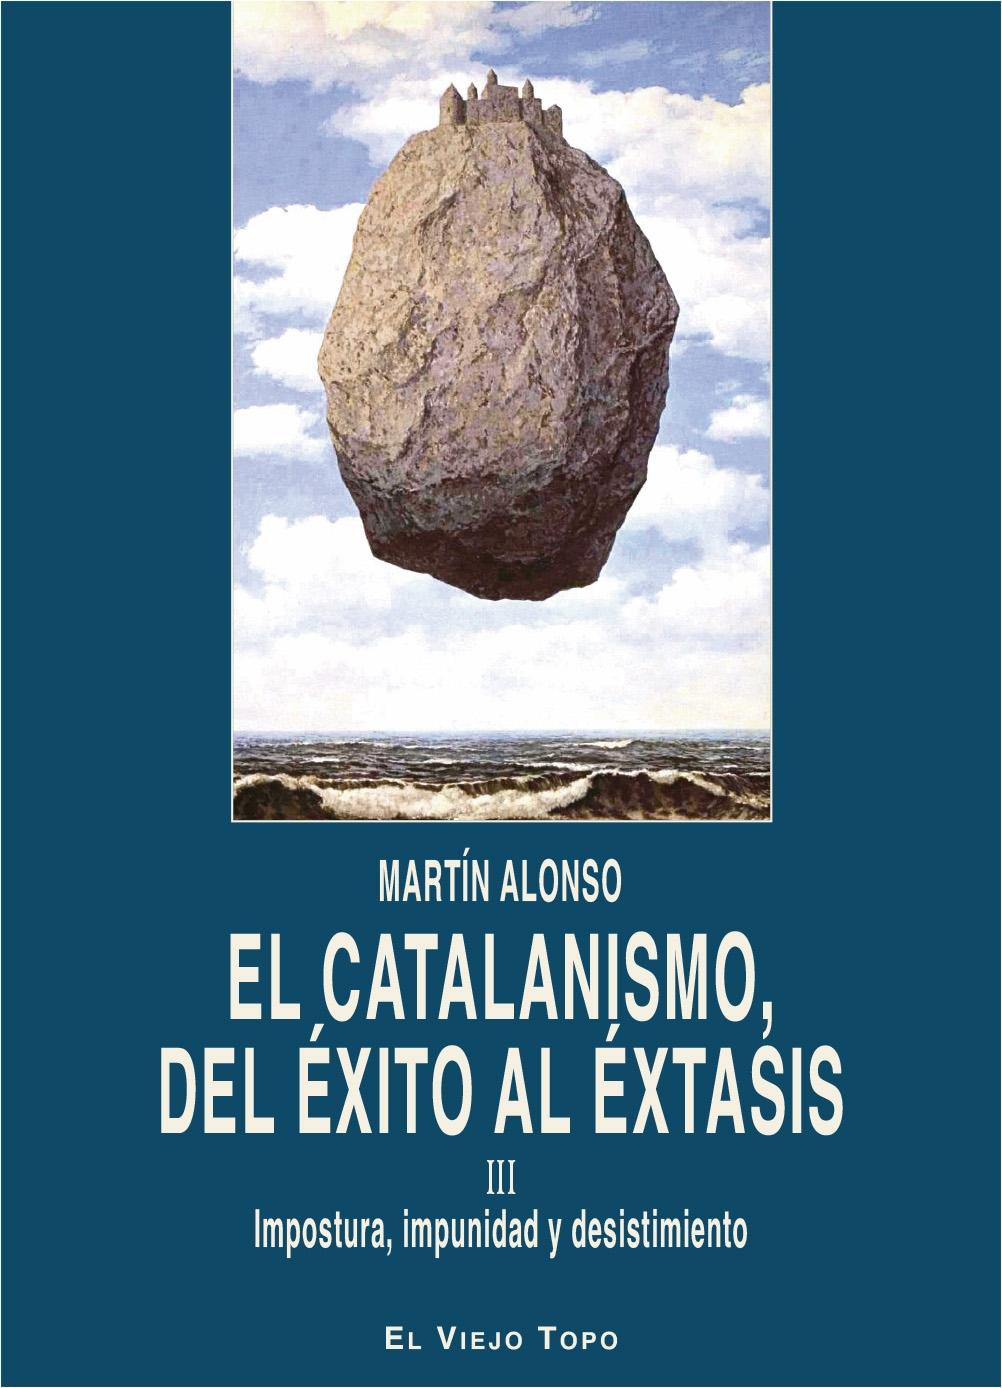 El catalanismo, del éxito al éxtasis. Vol III "Impostura, impunidad y desistimiento"